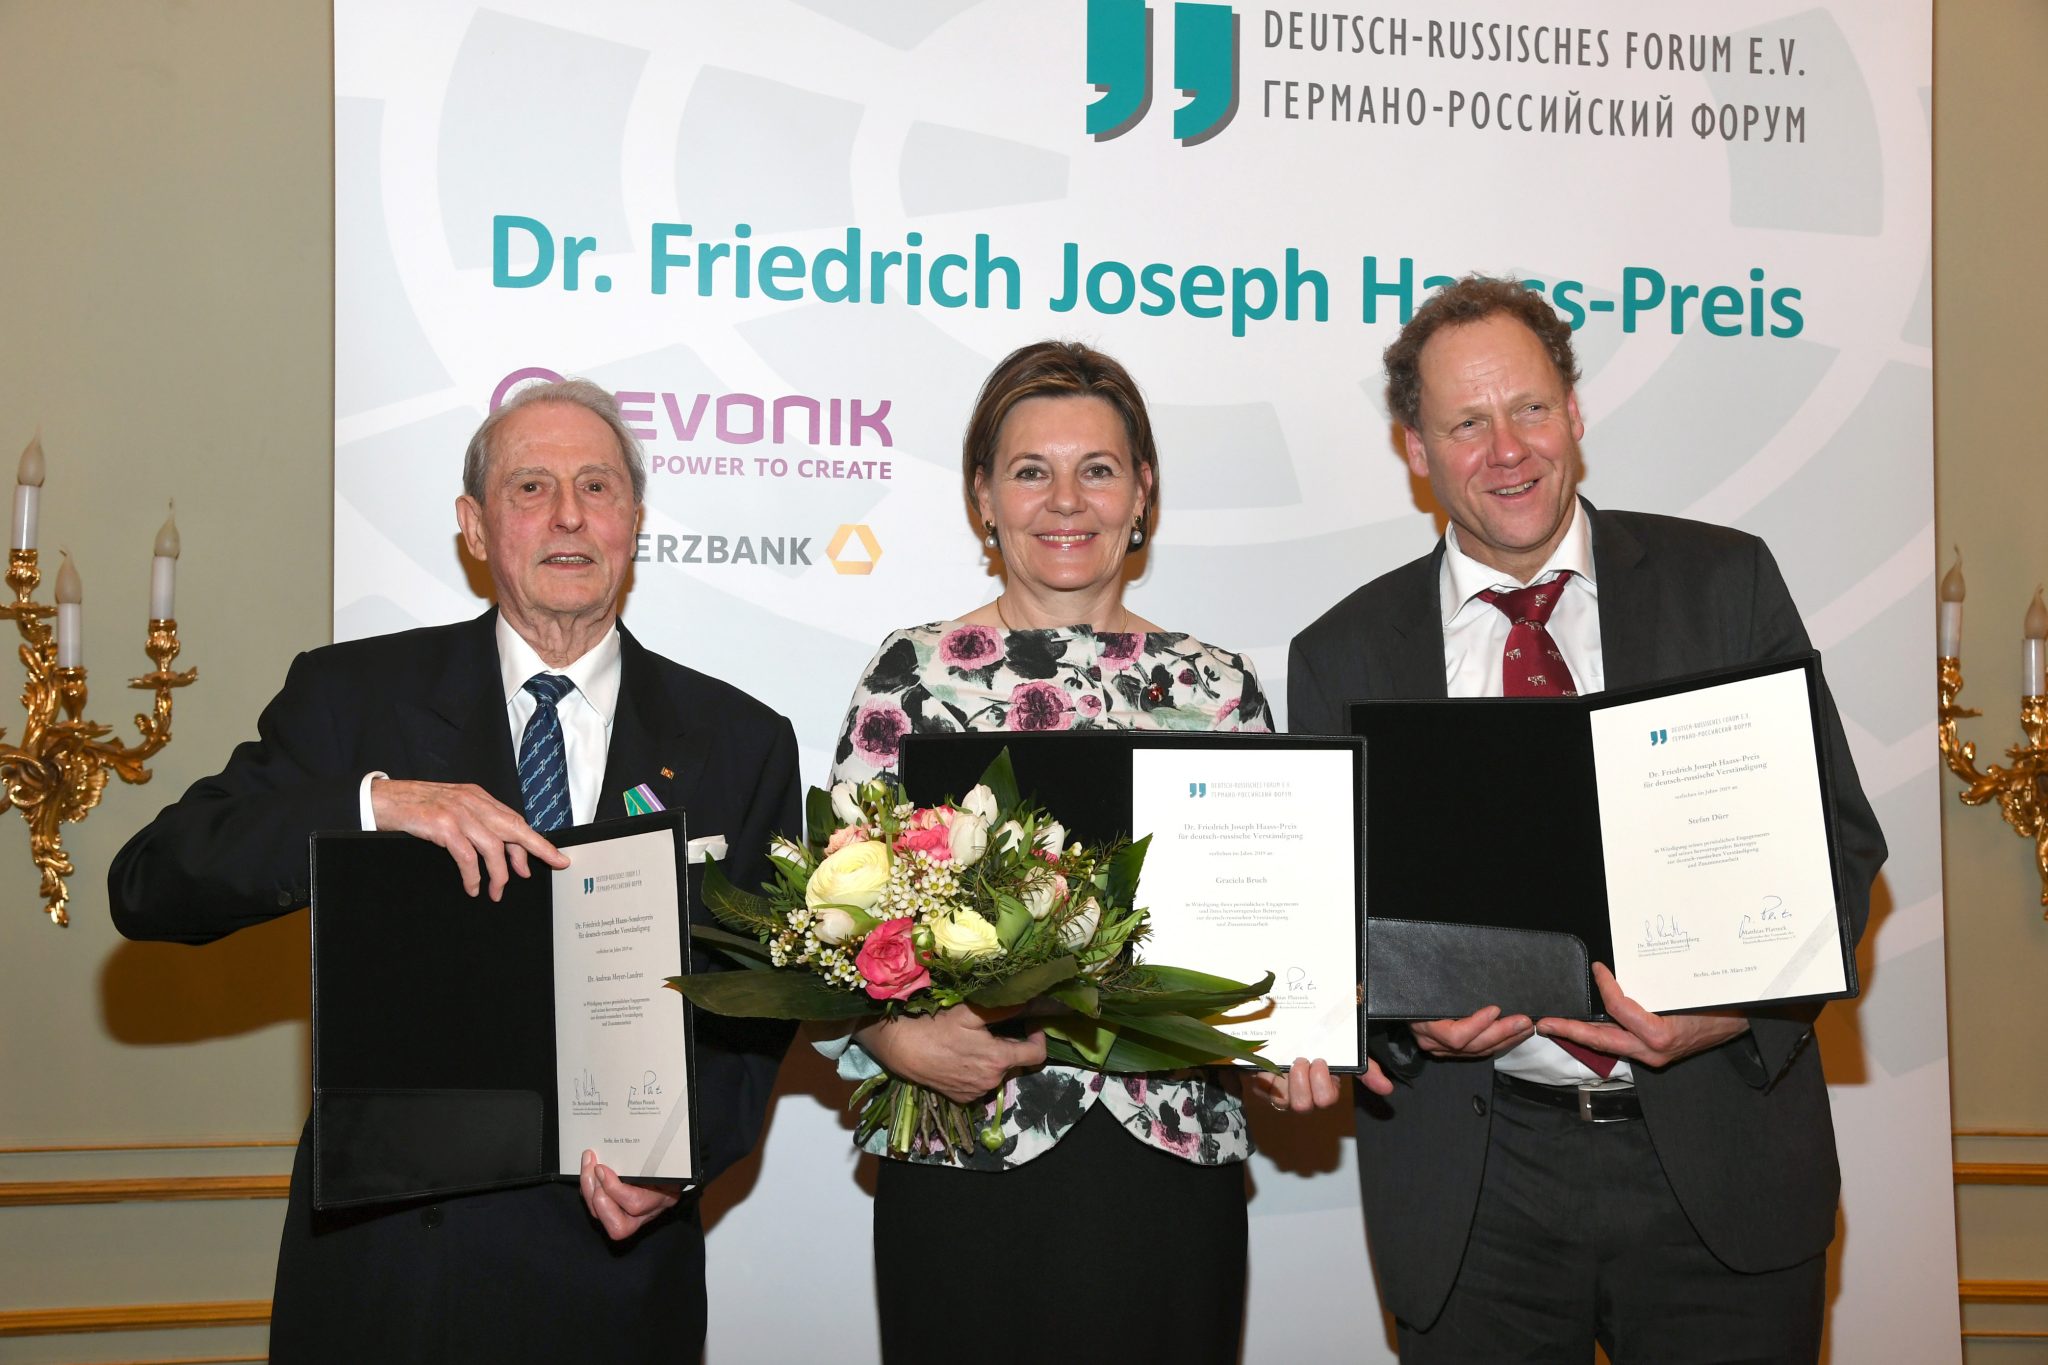 Verleihung des Dr. Friedrich Joseph Haass-Preises für deutsch-russische Verständigung